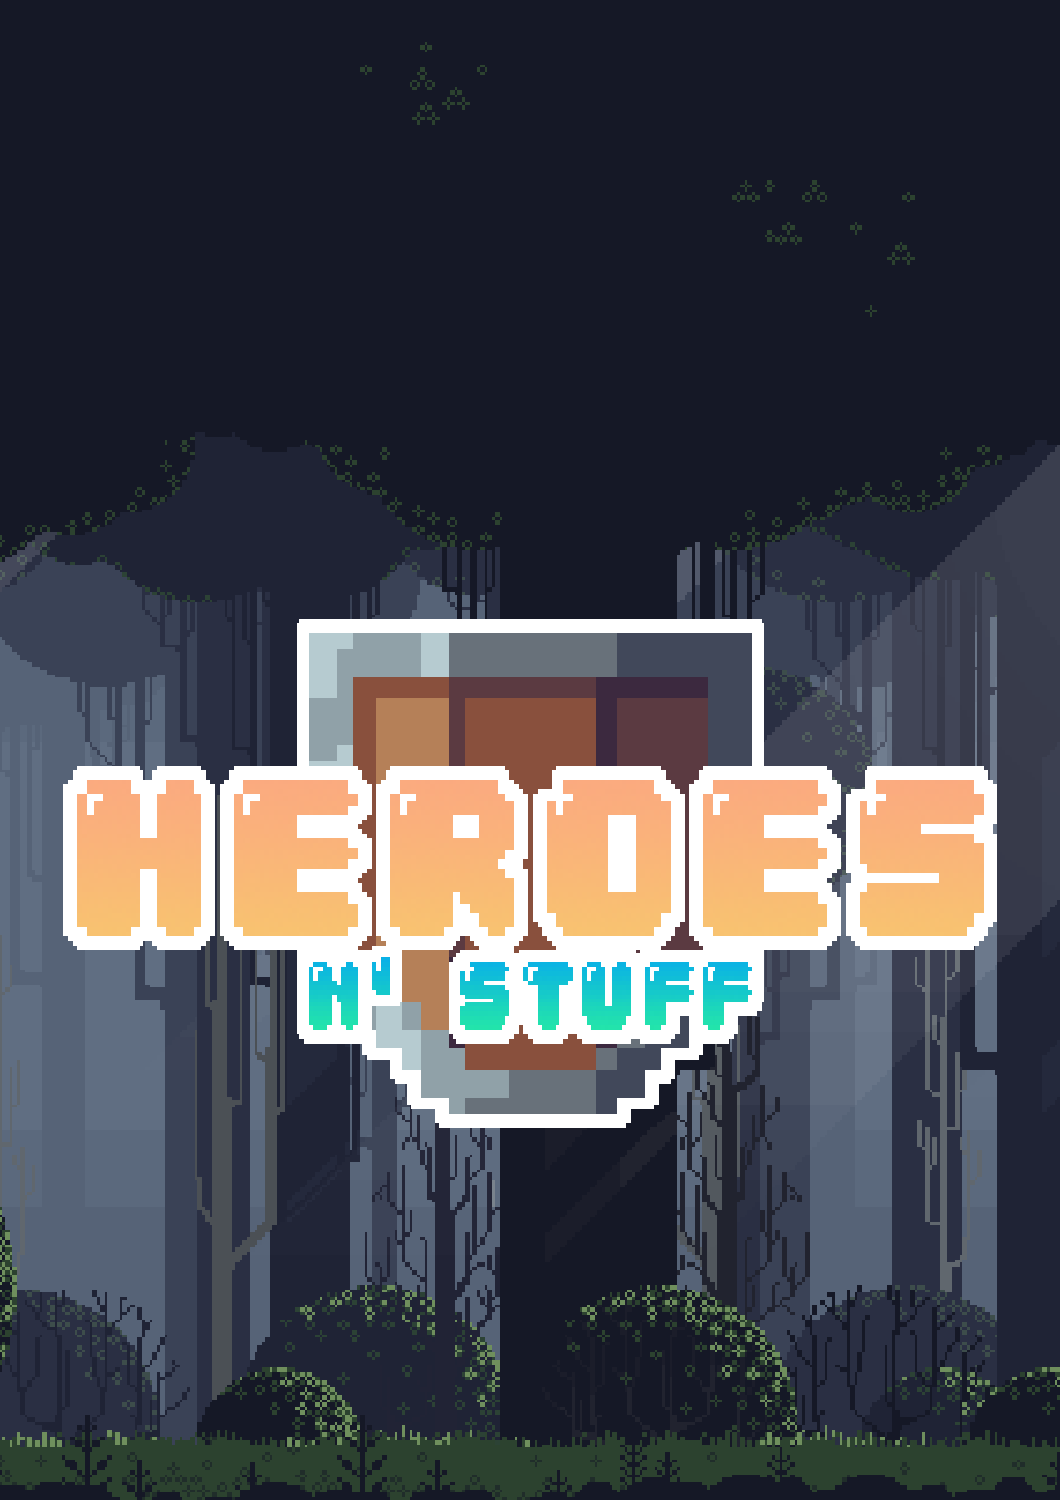 Heroes N’ Stuff